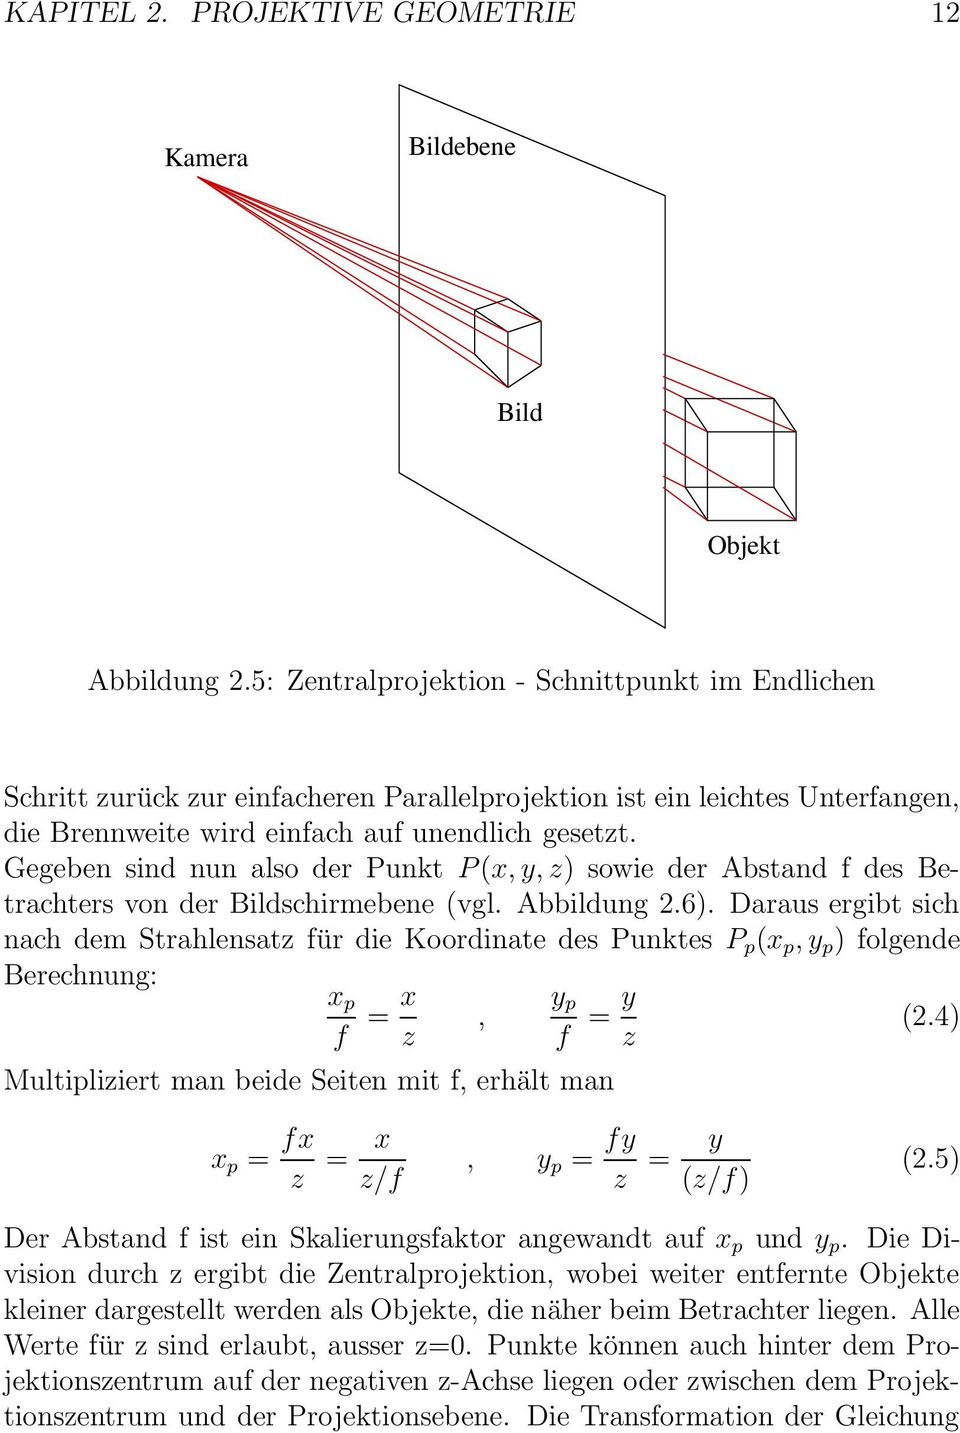 Gegeben sind nun also der Punkt P (x, y, z) sowie der Abstand f des Betrachters von der Bildschirmebene (vgl. Abbildung 2.6).